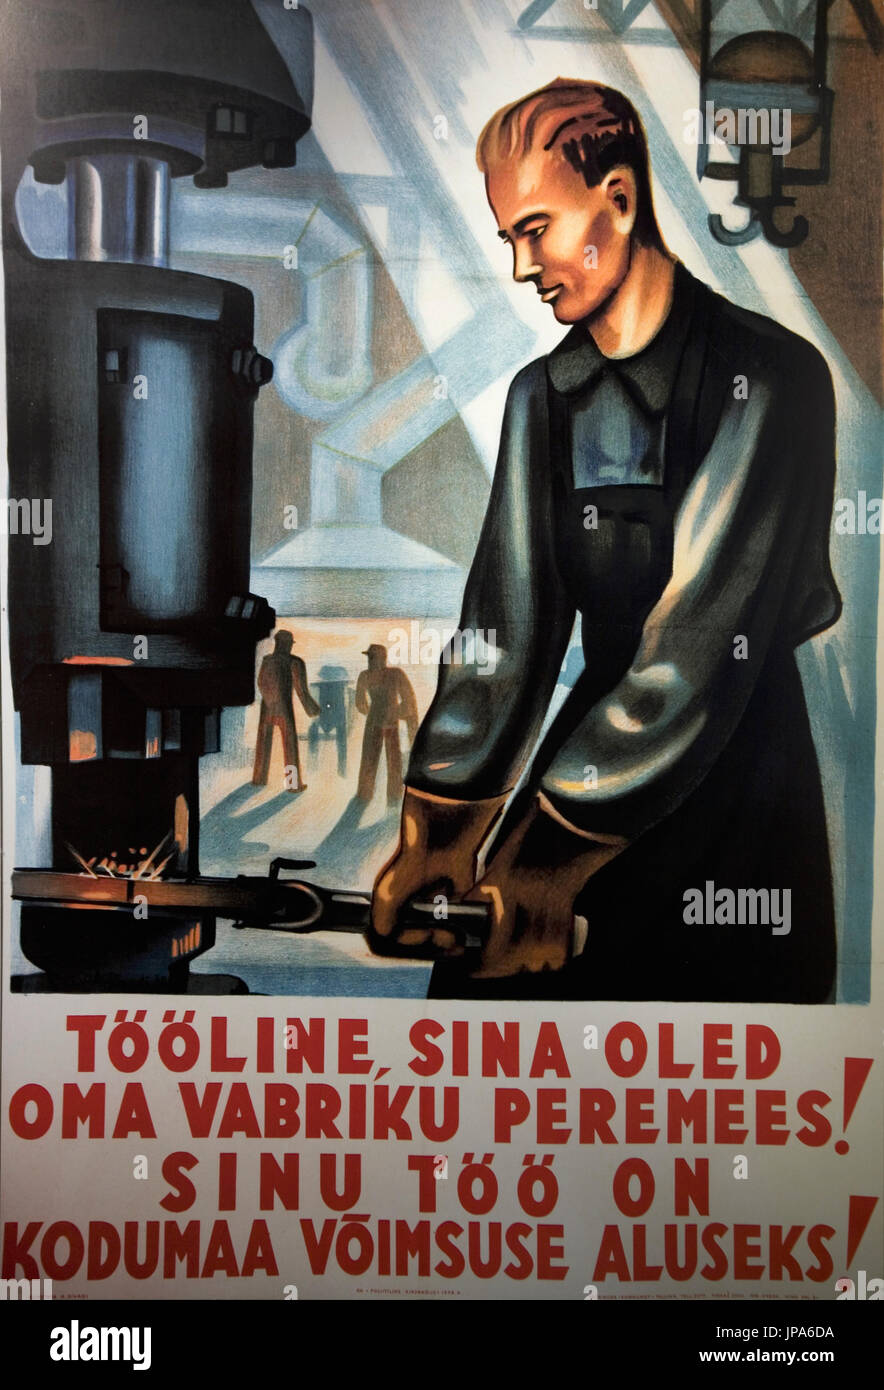 L'affiche de l'époque soviétique, linnamuuseum, aka Tallinn City Museum, du 17, Tallinn, Estonie Banque D'Images